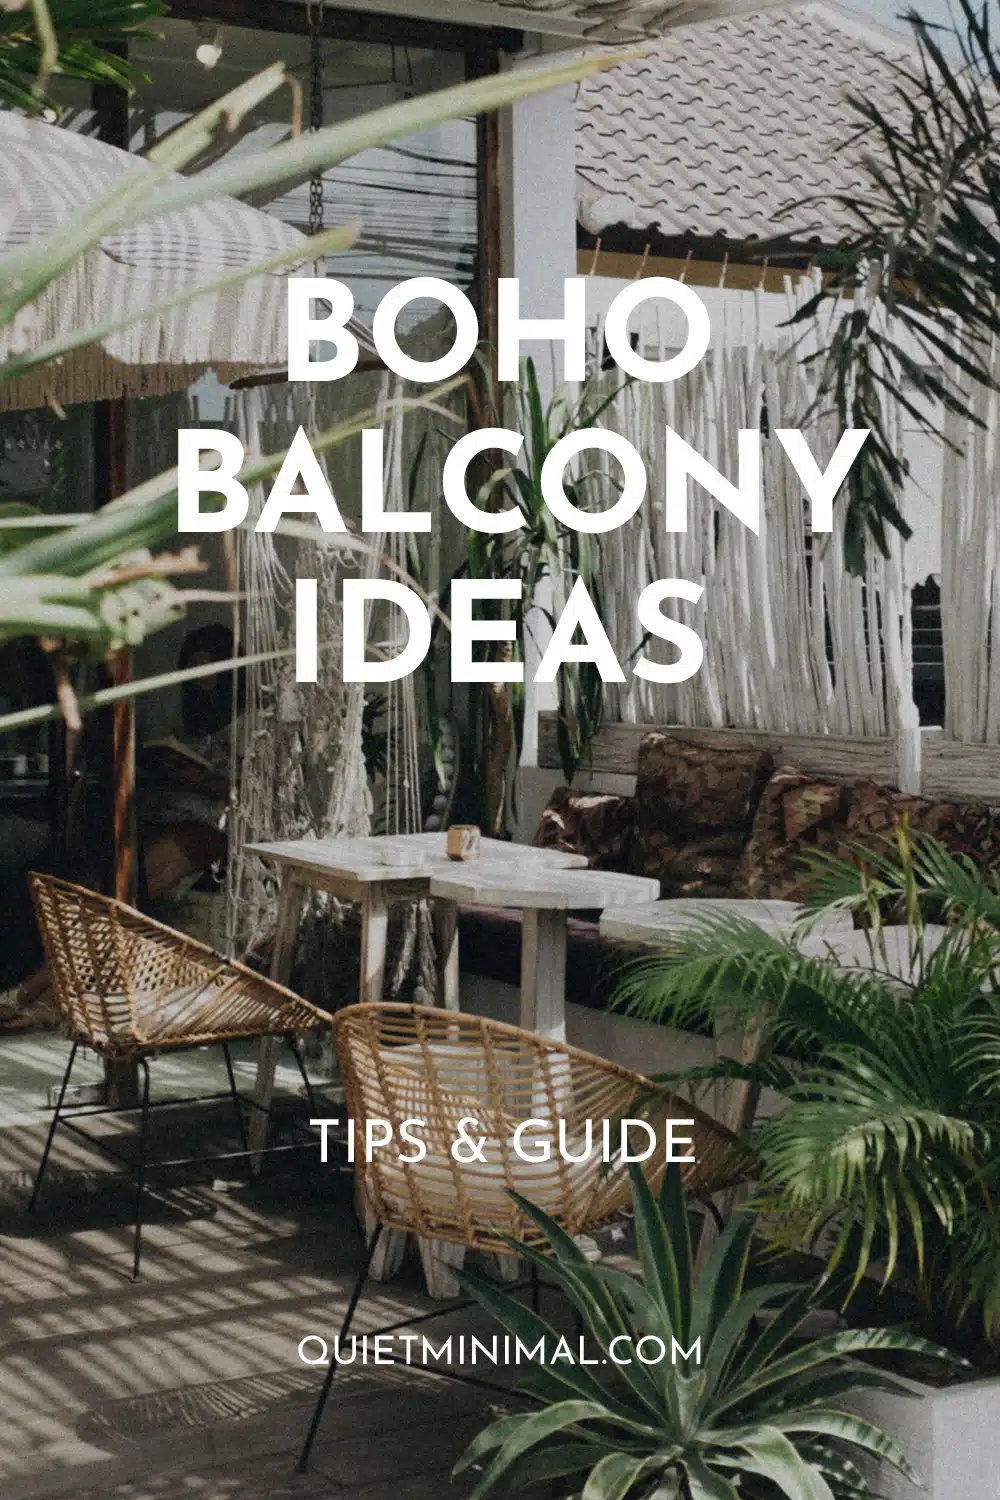 boho balcony idea, tips, and guide